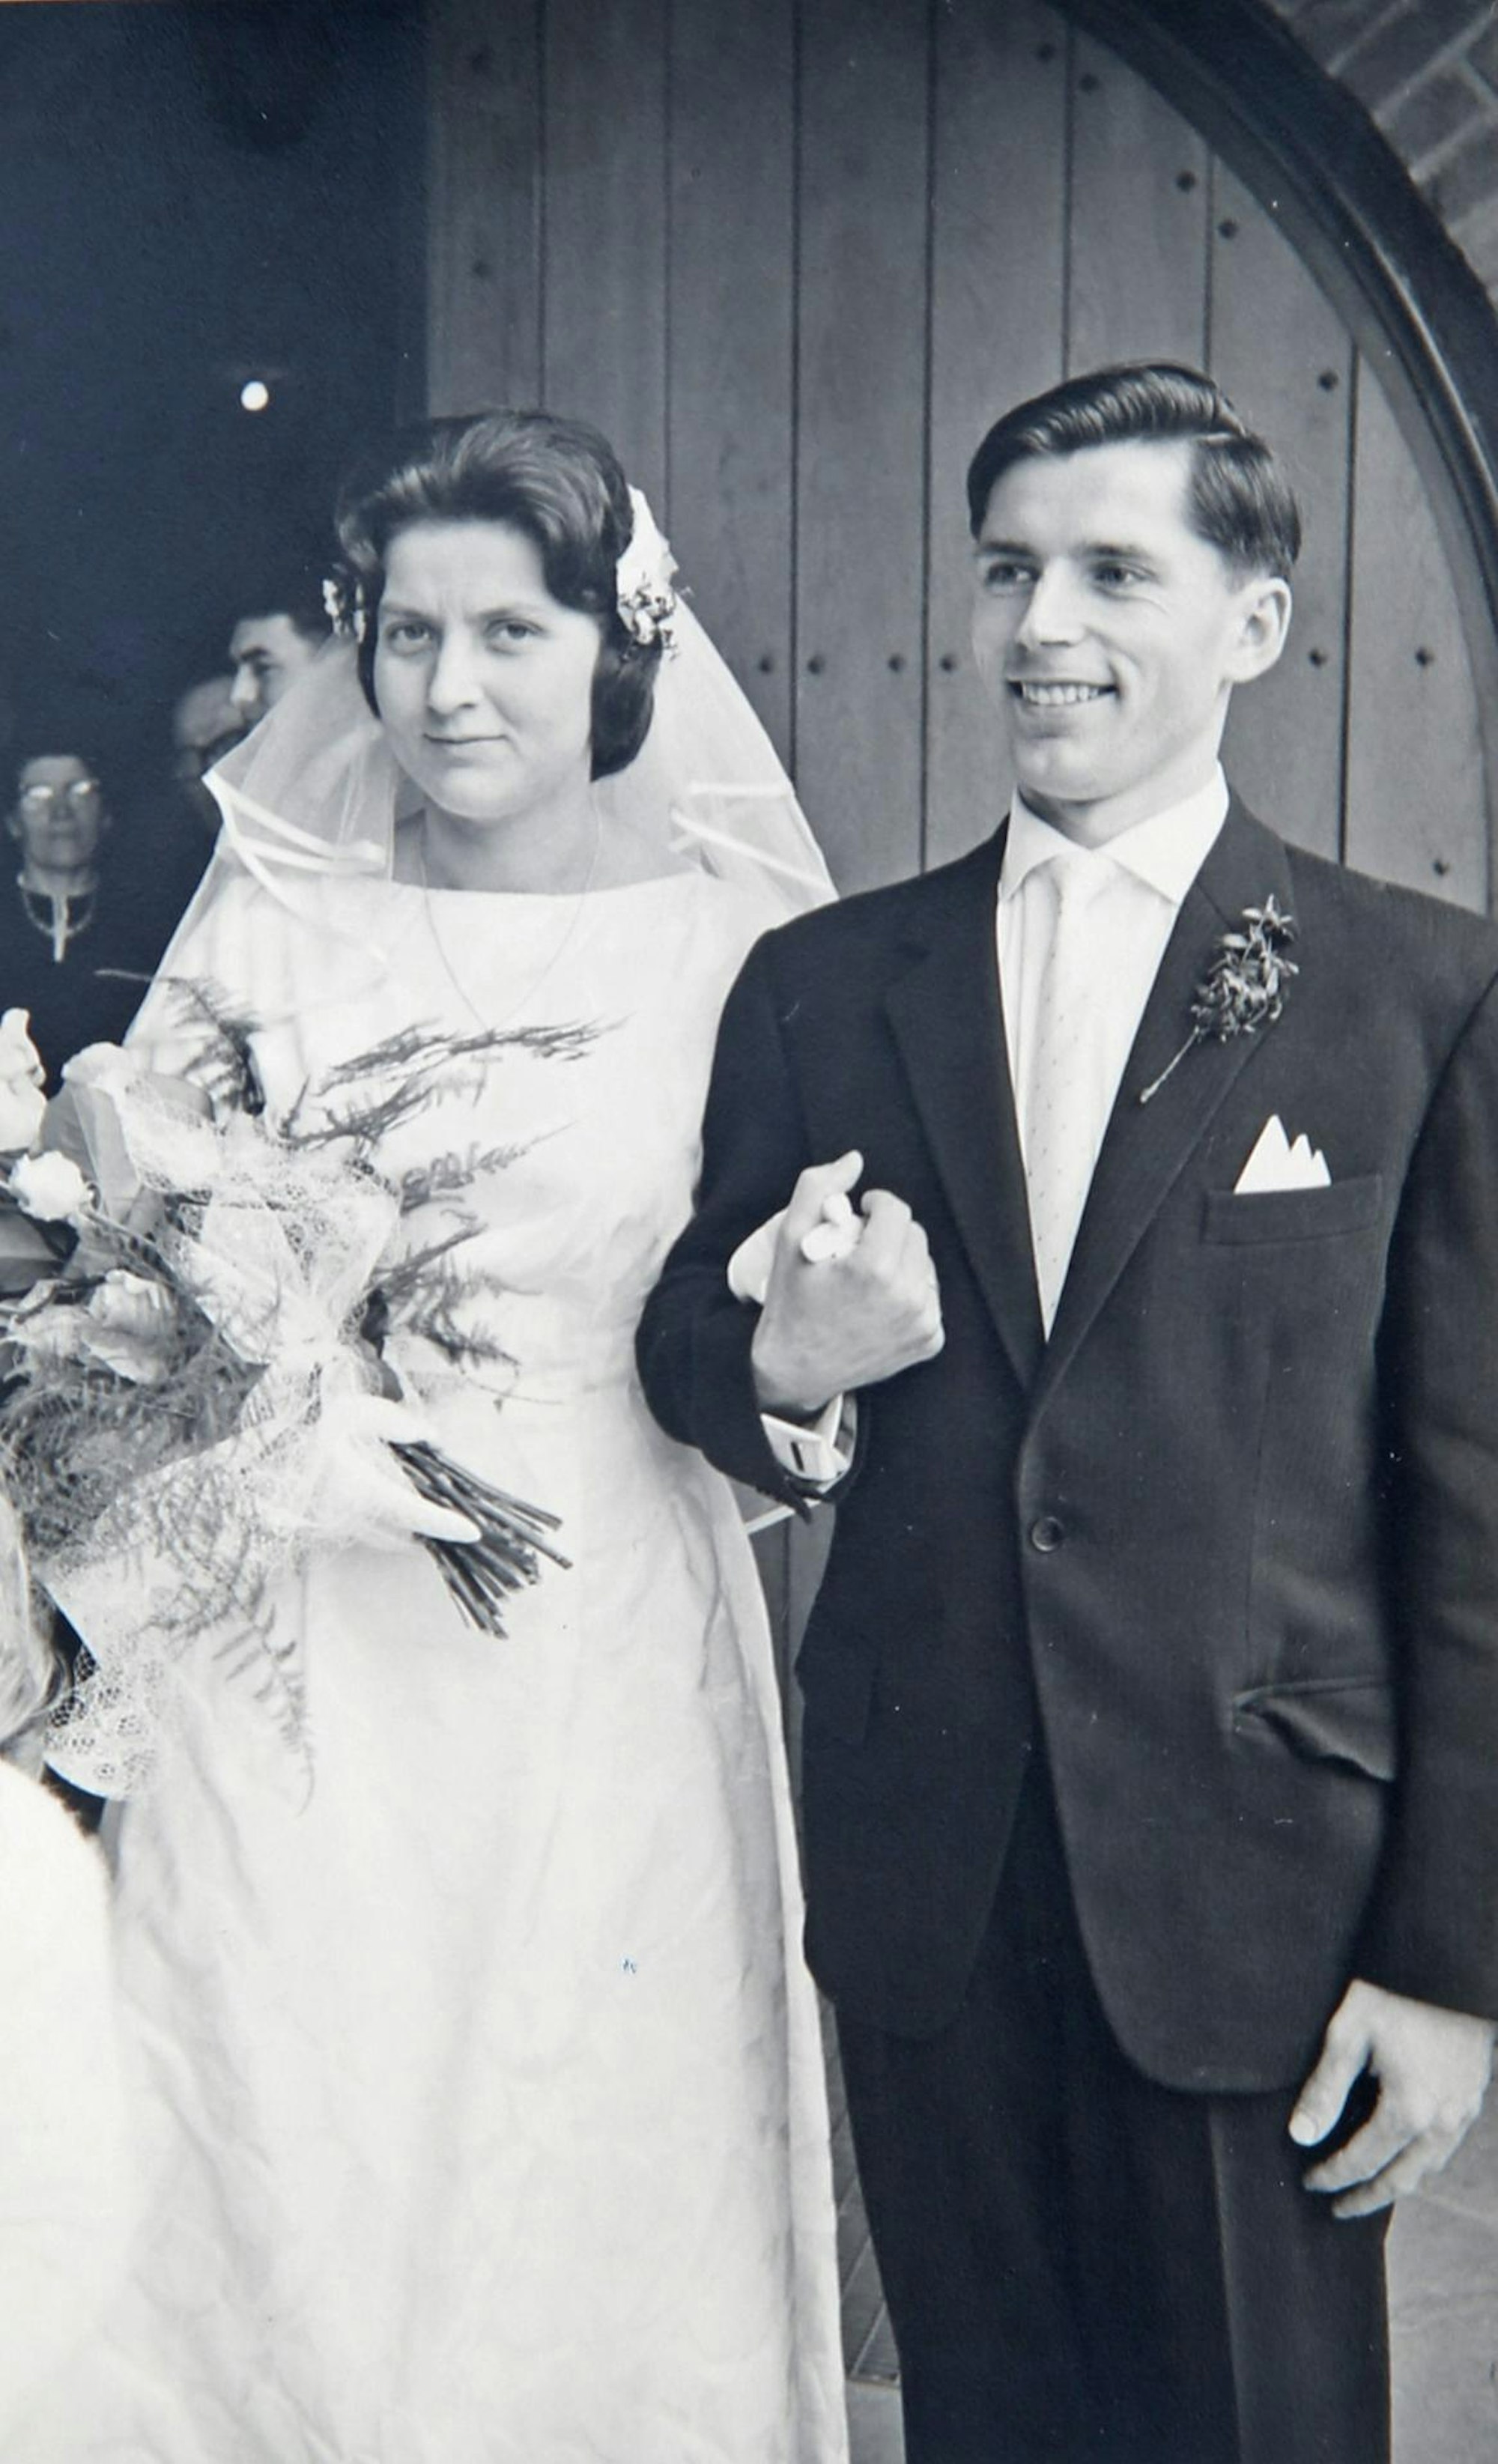 Am 2. Juni 1962, nachdem Irmtraud Diedrich erfolgreich ihr Studium beendet hatte, wurde auch kirchlich geheiratet.